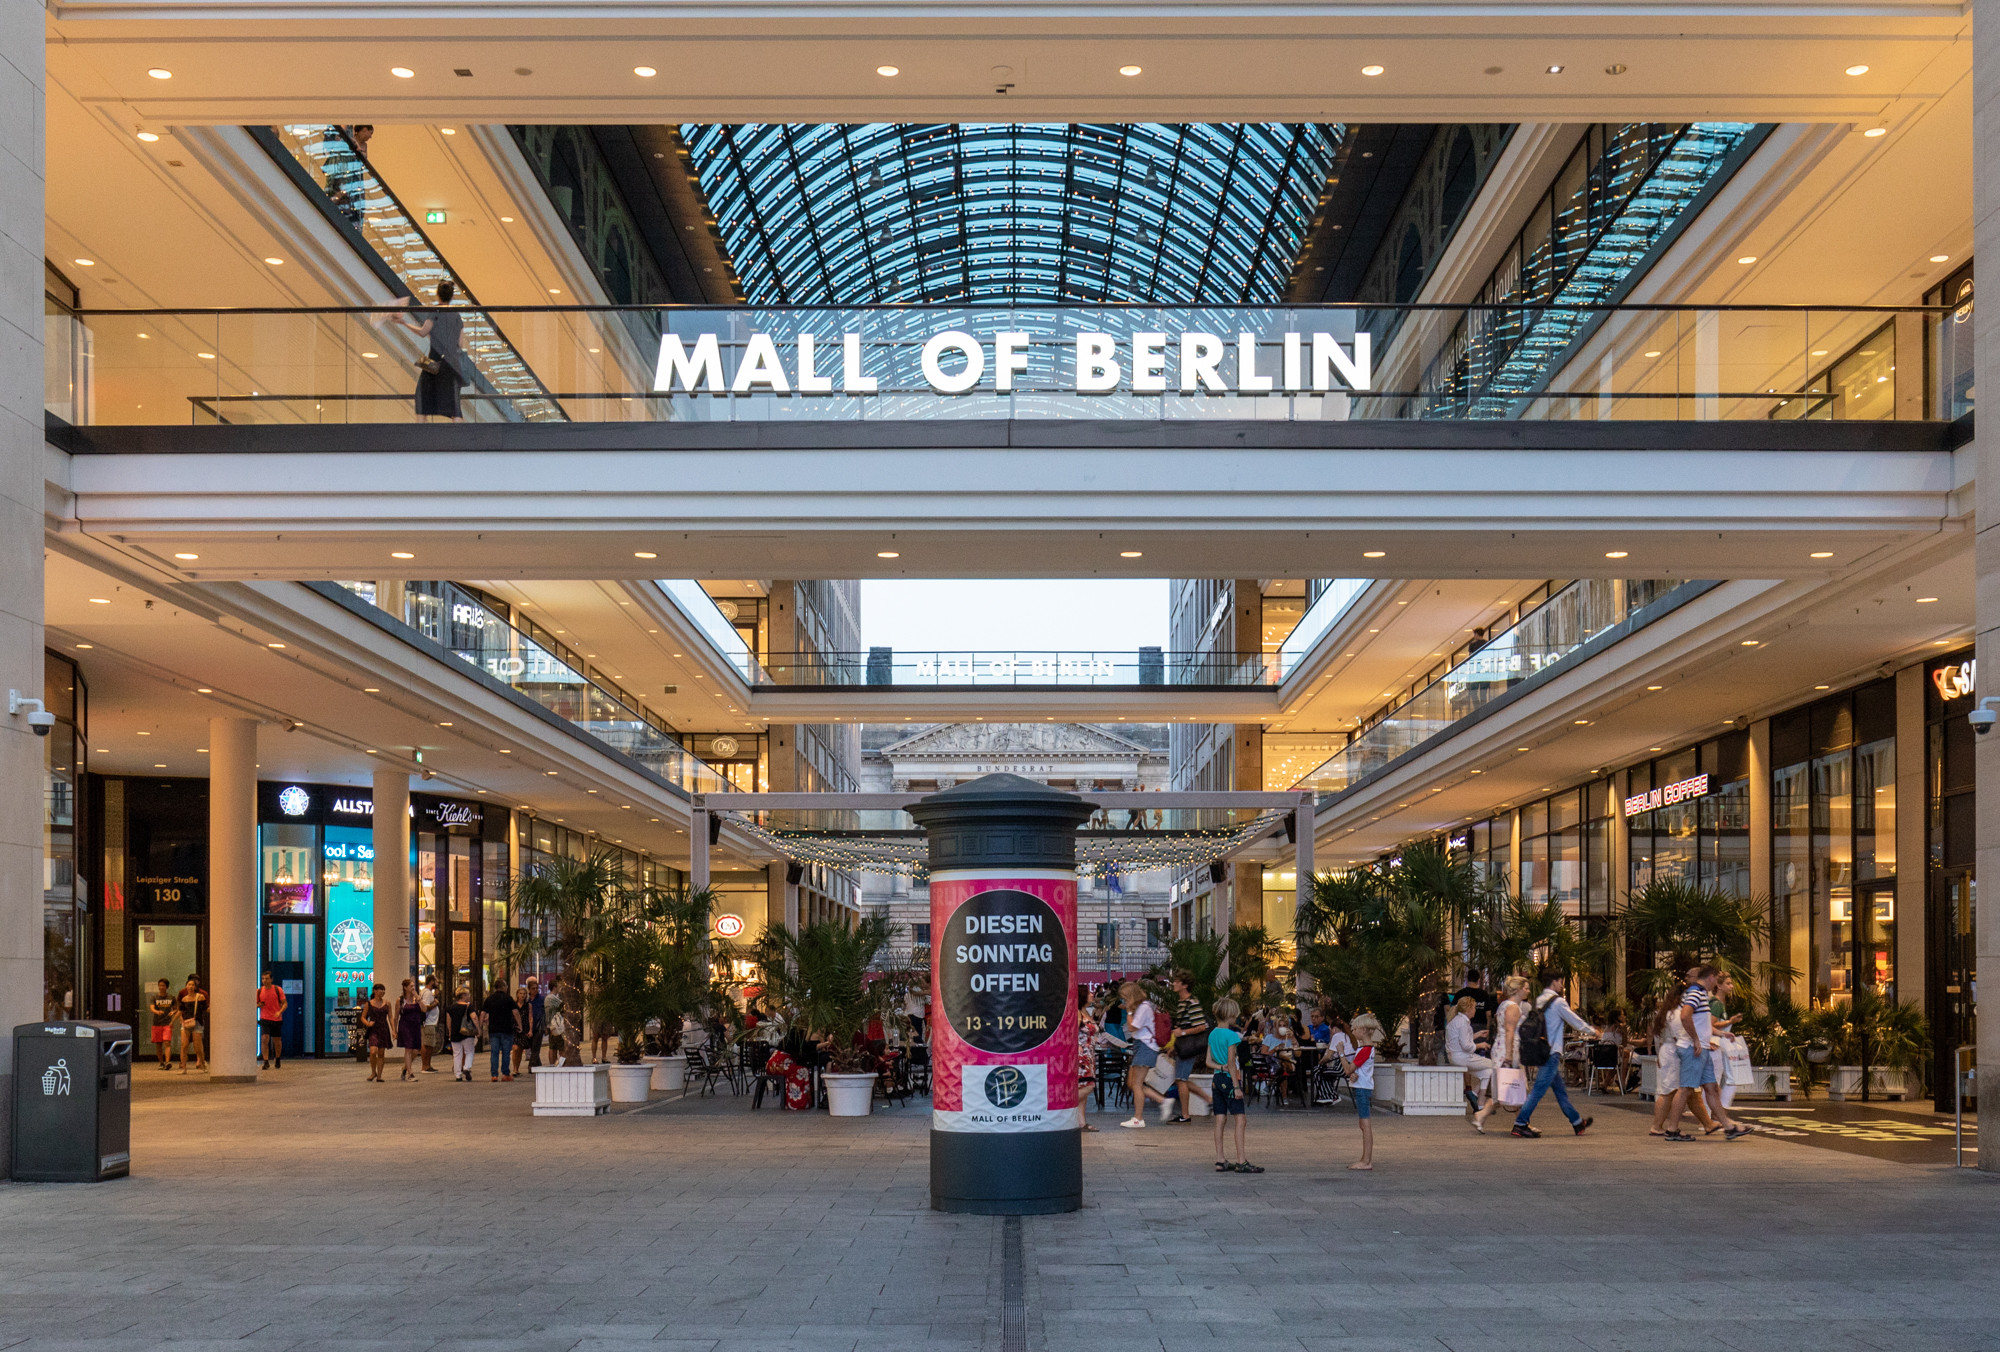 Verkaufsoffener Sonntag wird bei Mall of Berlin angekündigt